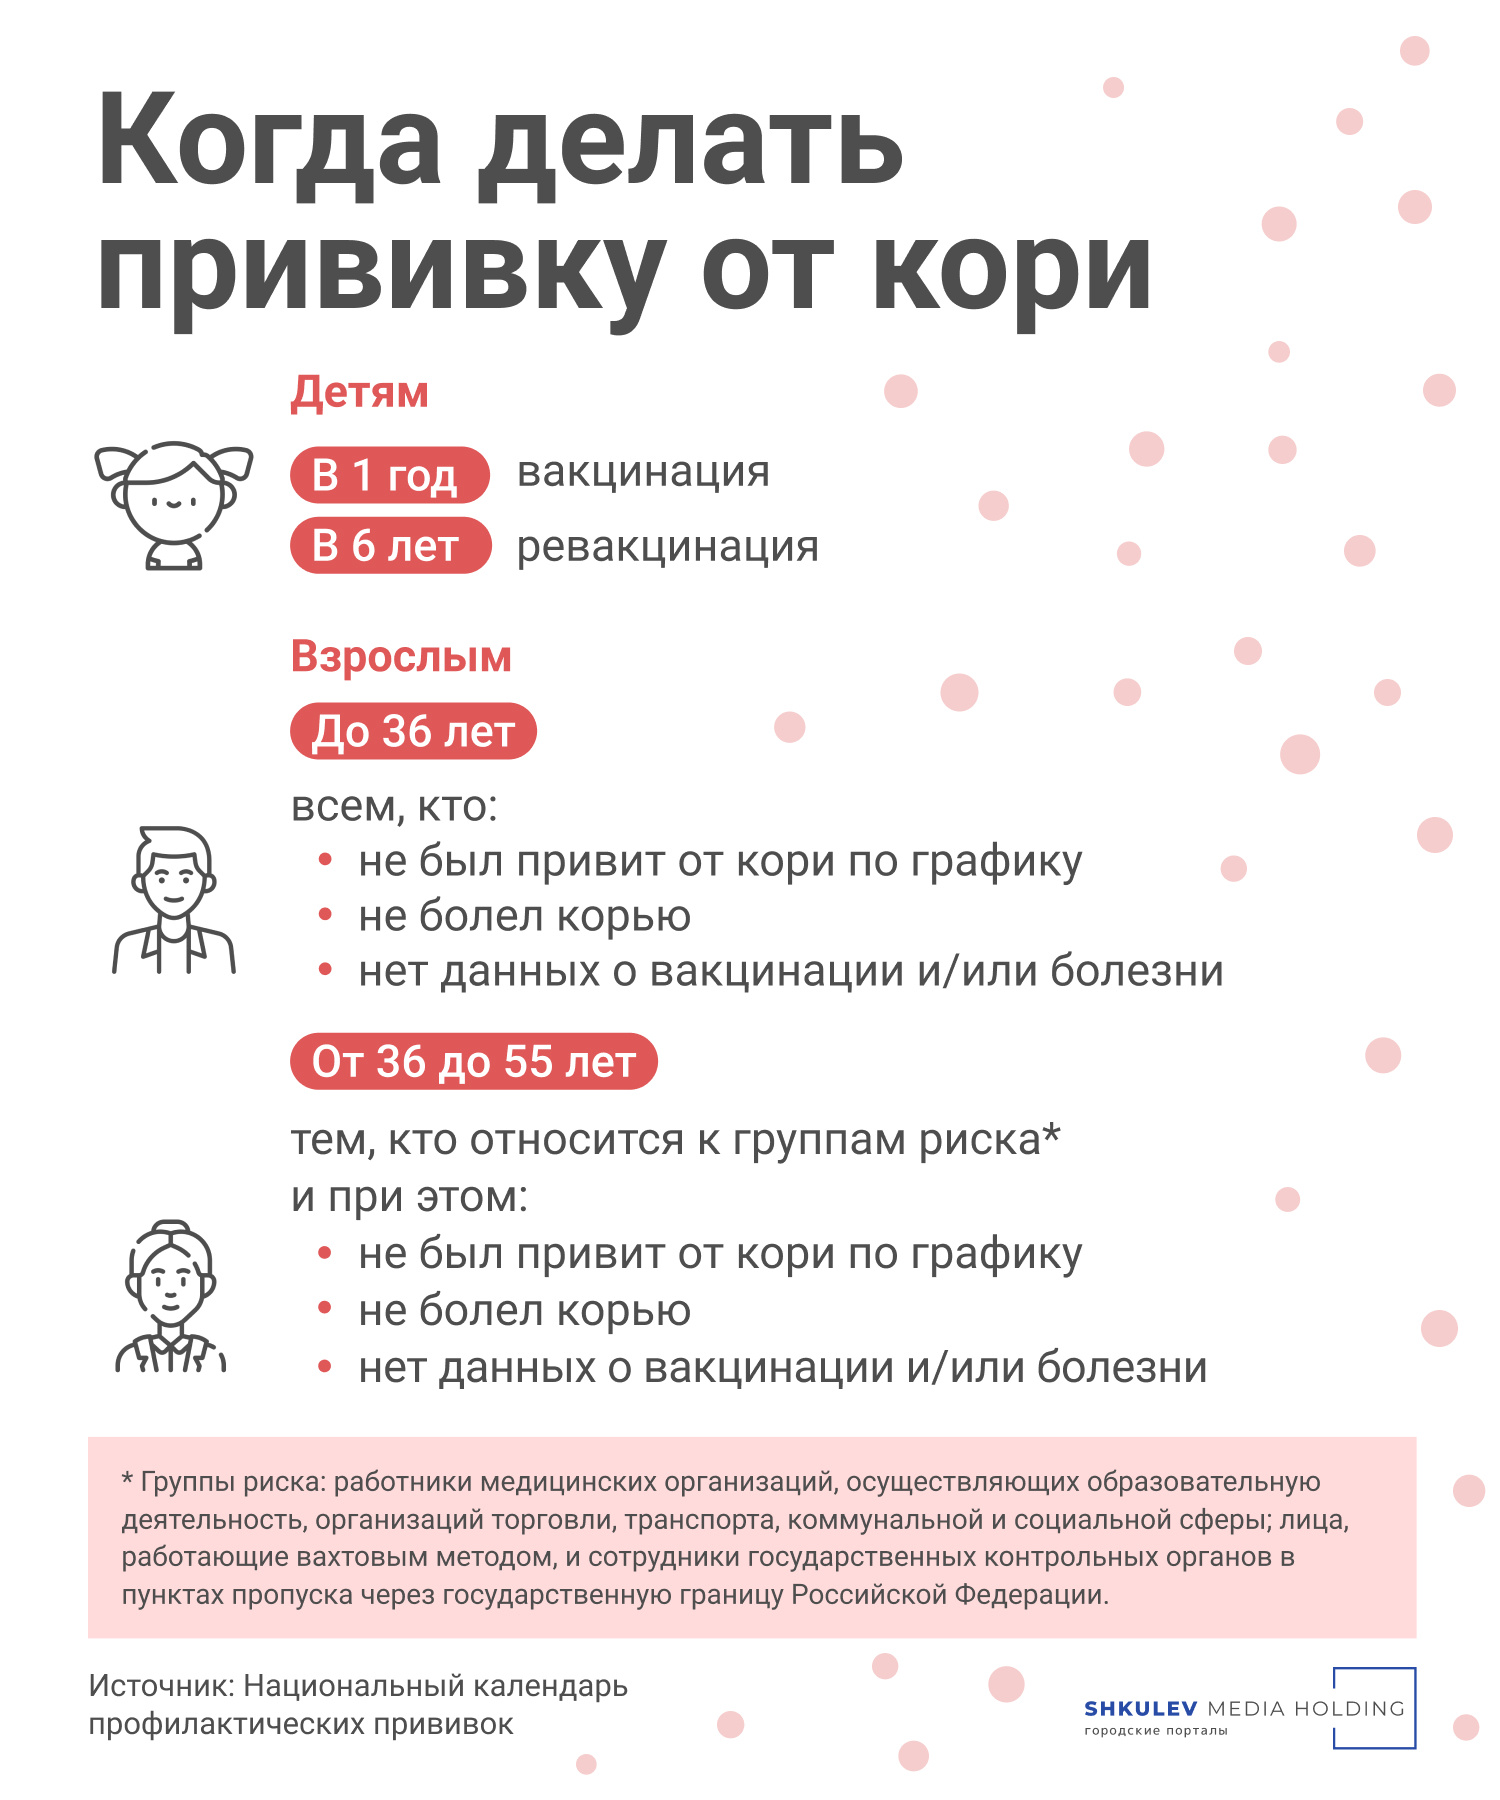 Вспышка кори в России: насколько опасна болезнь, симптомы, лечение - 21  апреля 2023 - Фонтанка.Ру